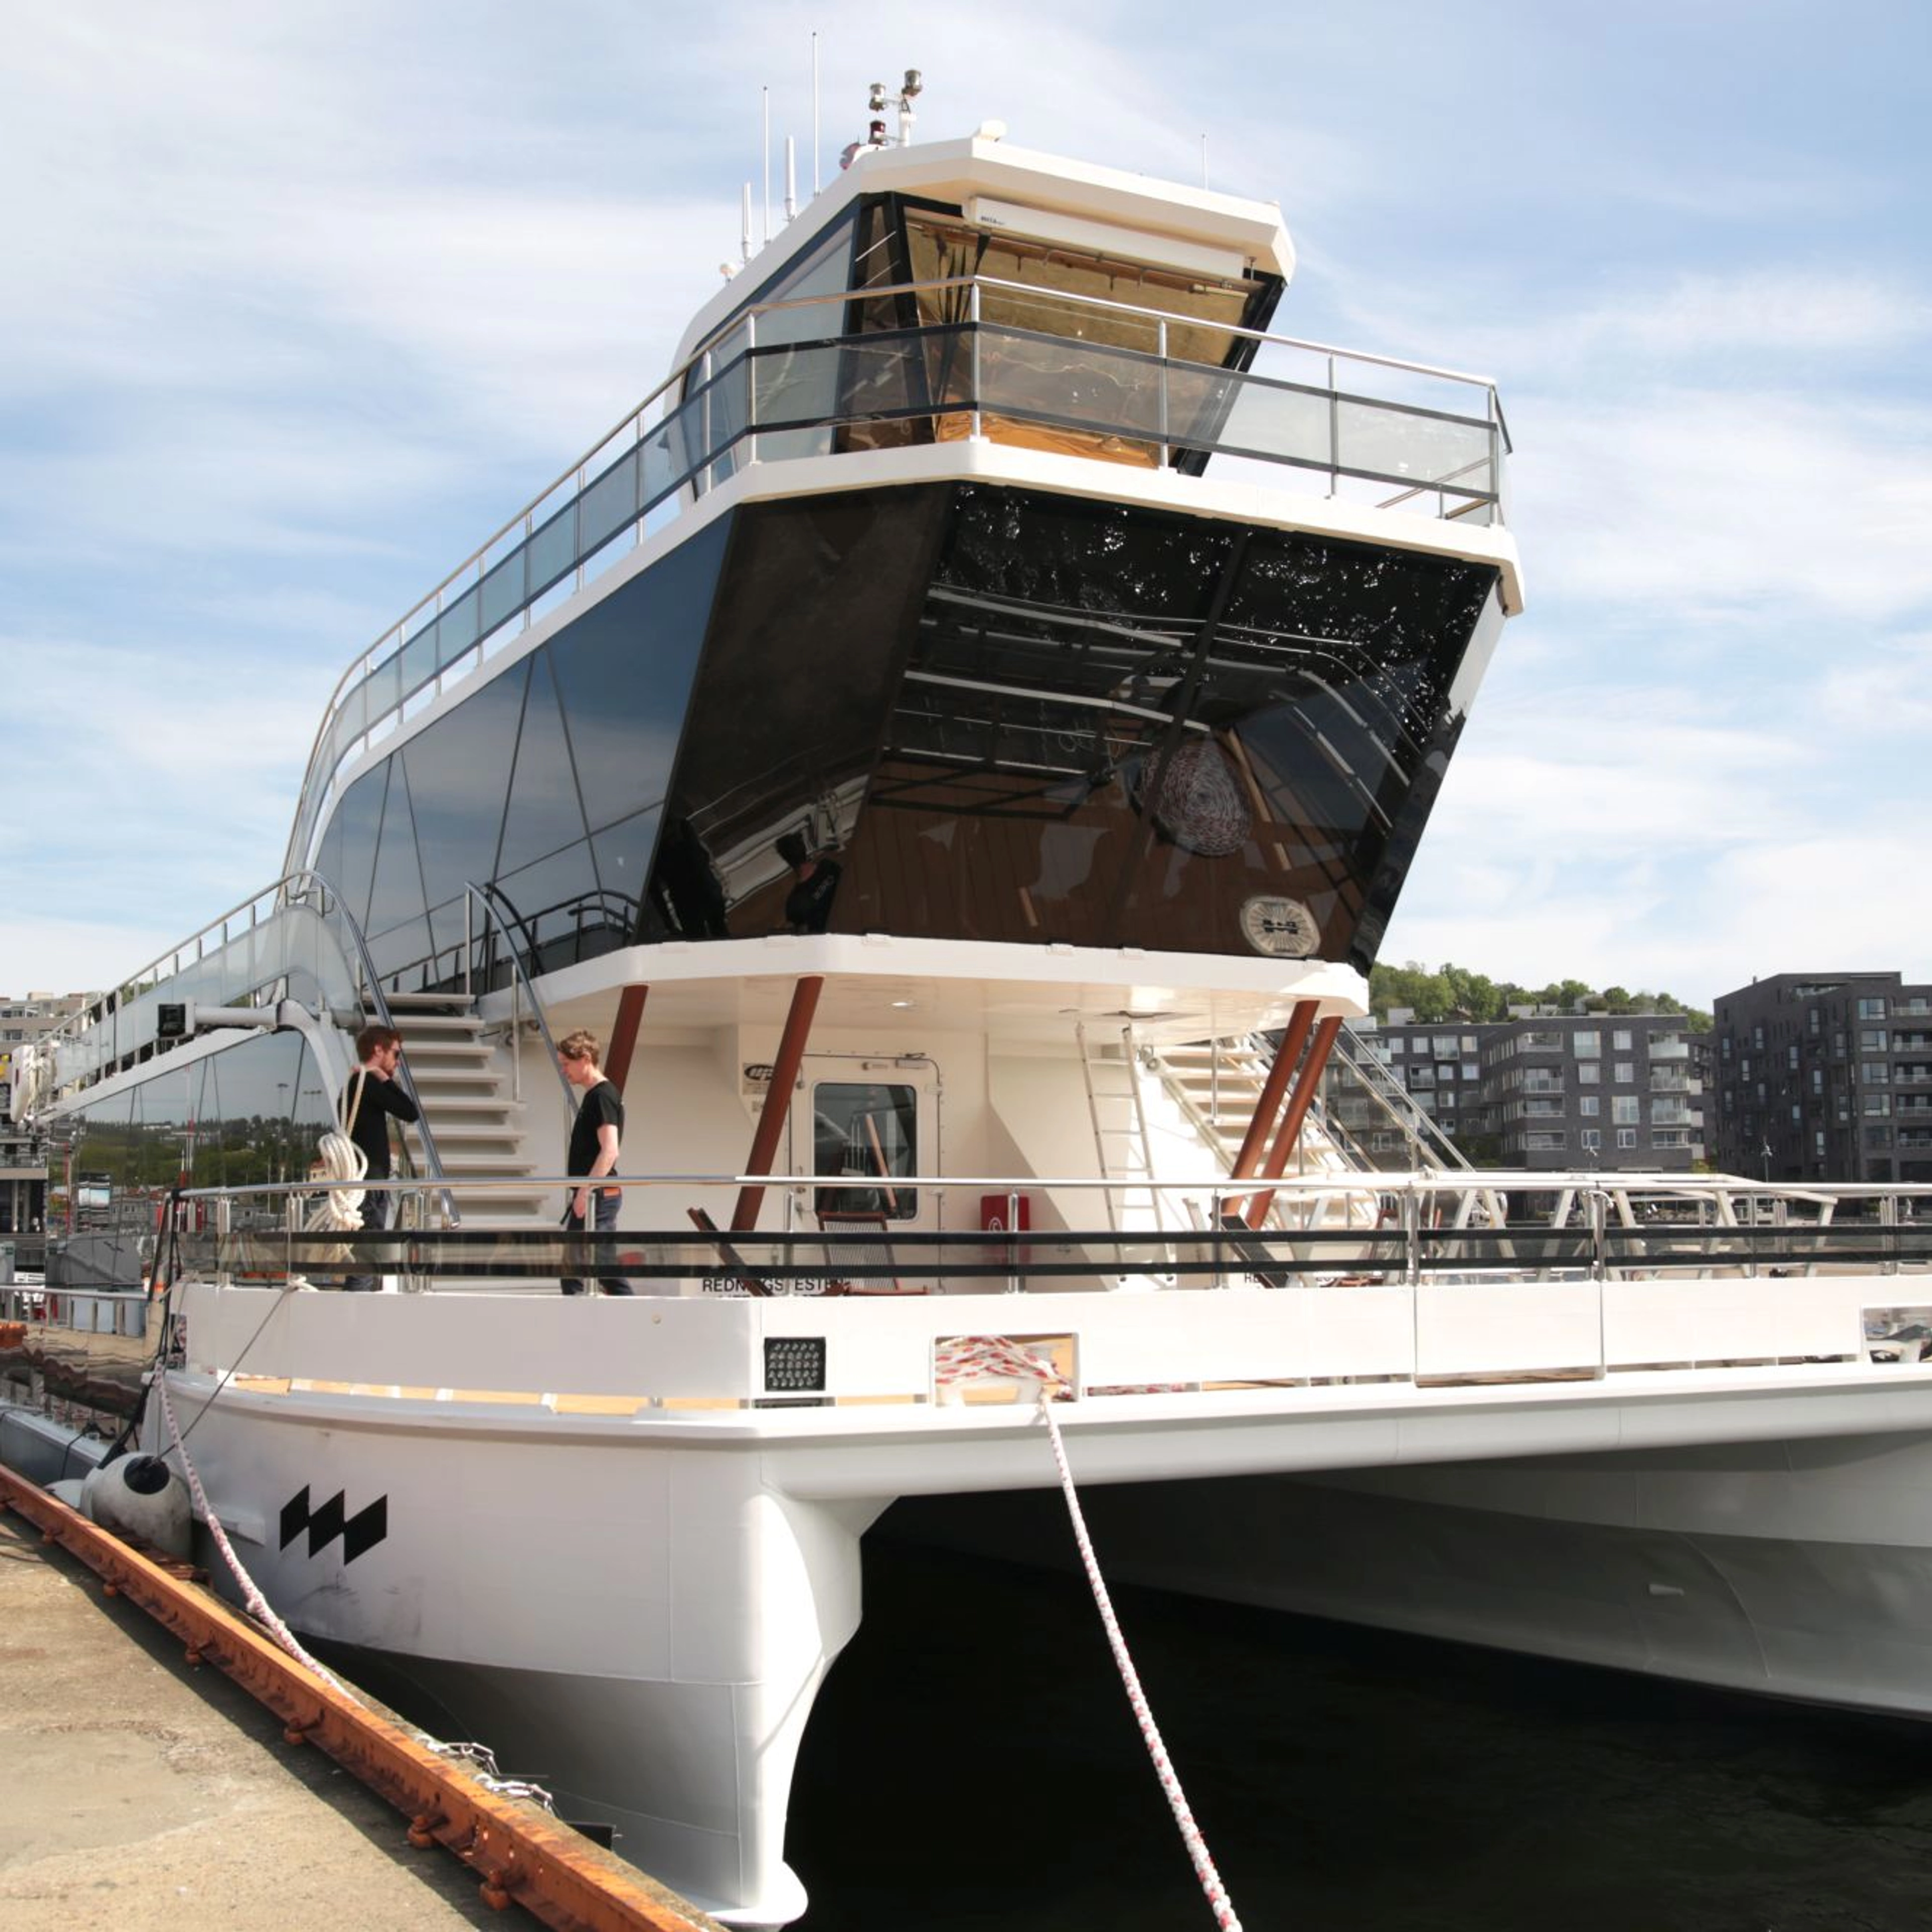 Dinner-Kreuzfahrt auf dem Oslofjord mit einem leisen Hybridboot - zum Anlegen in Oslo, Norwegen